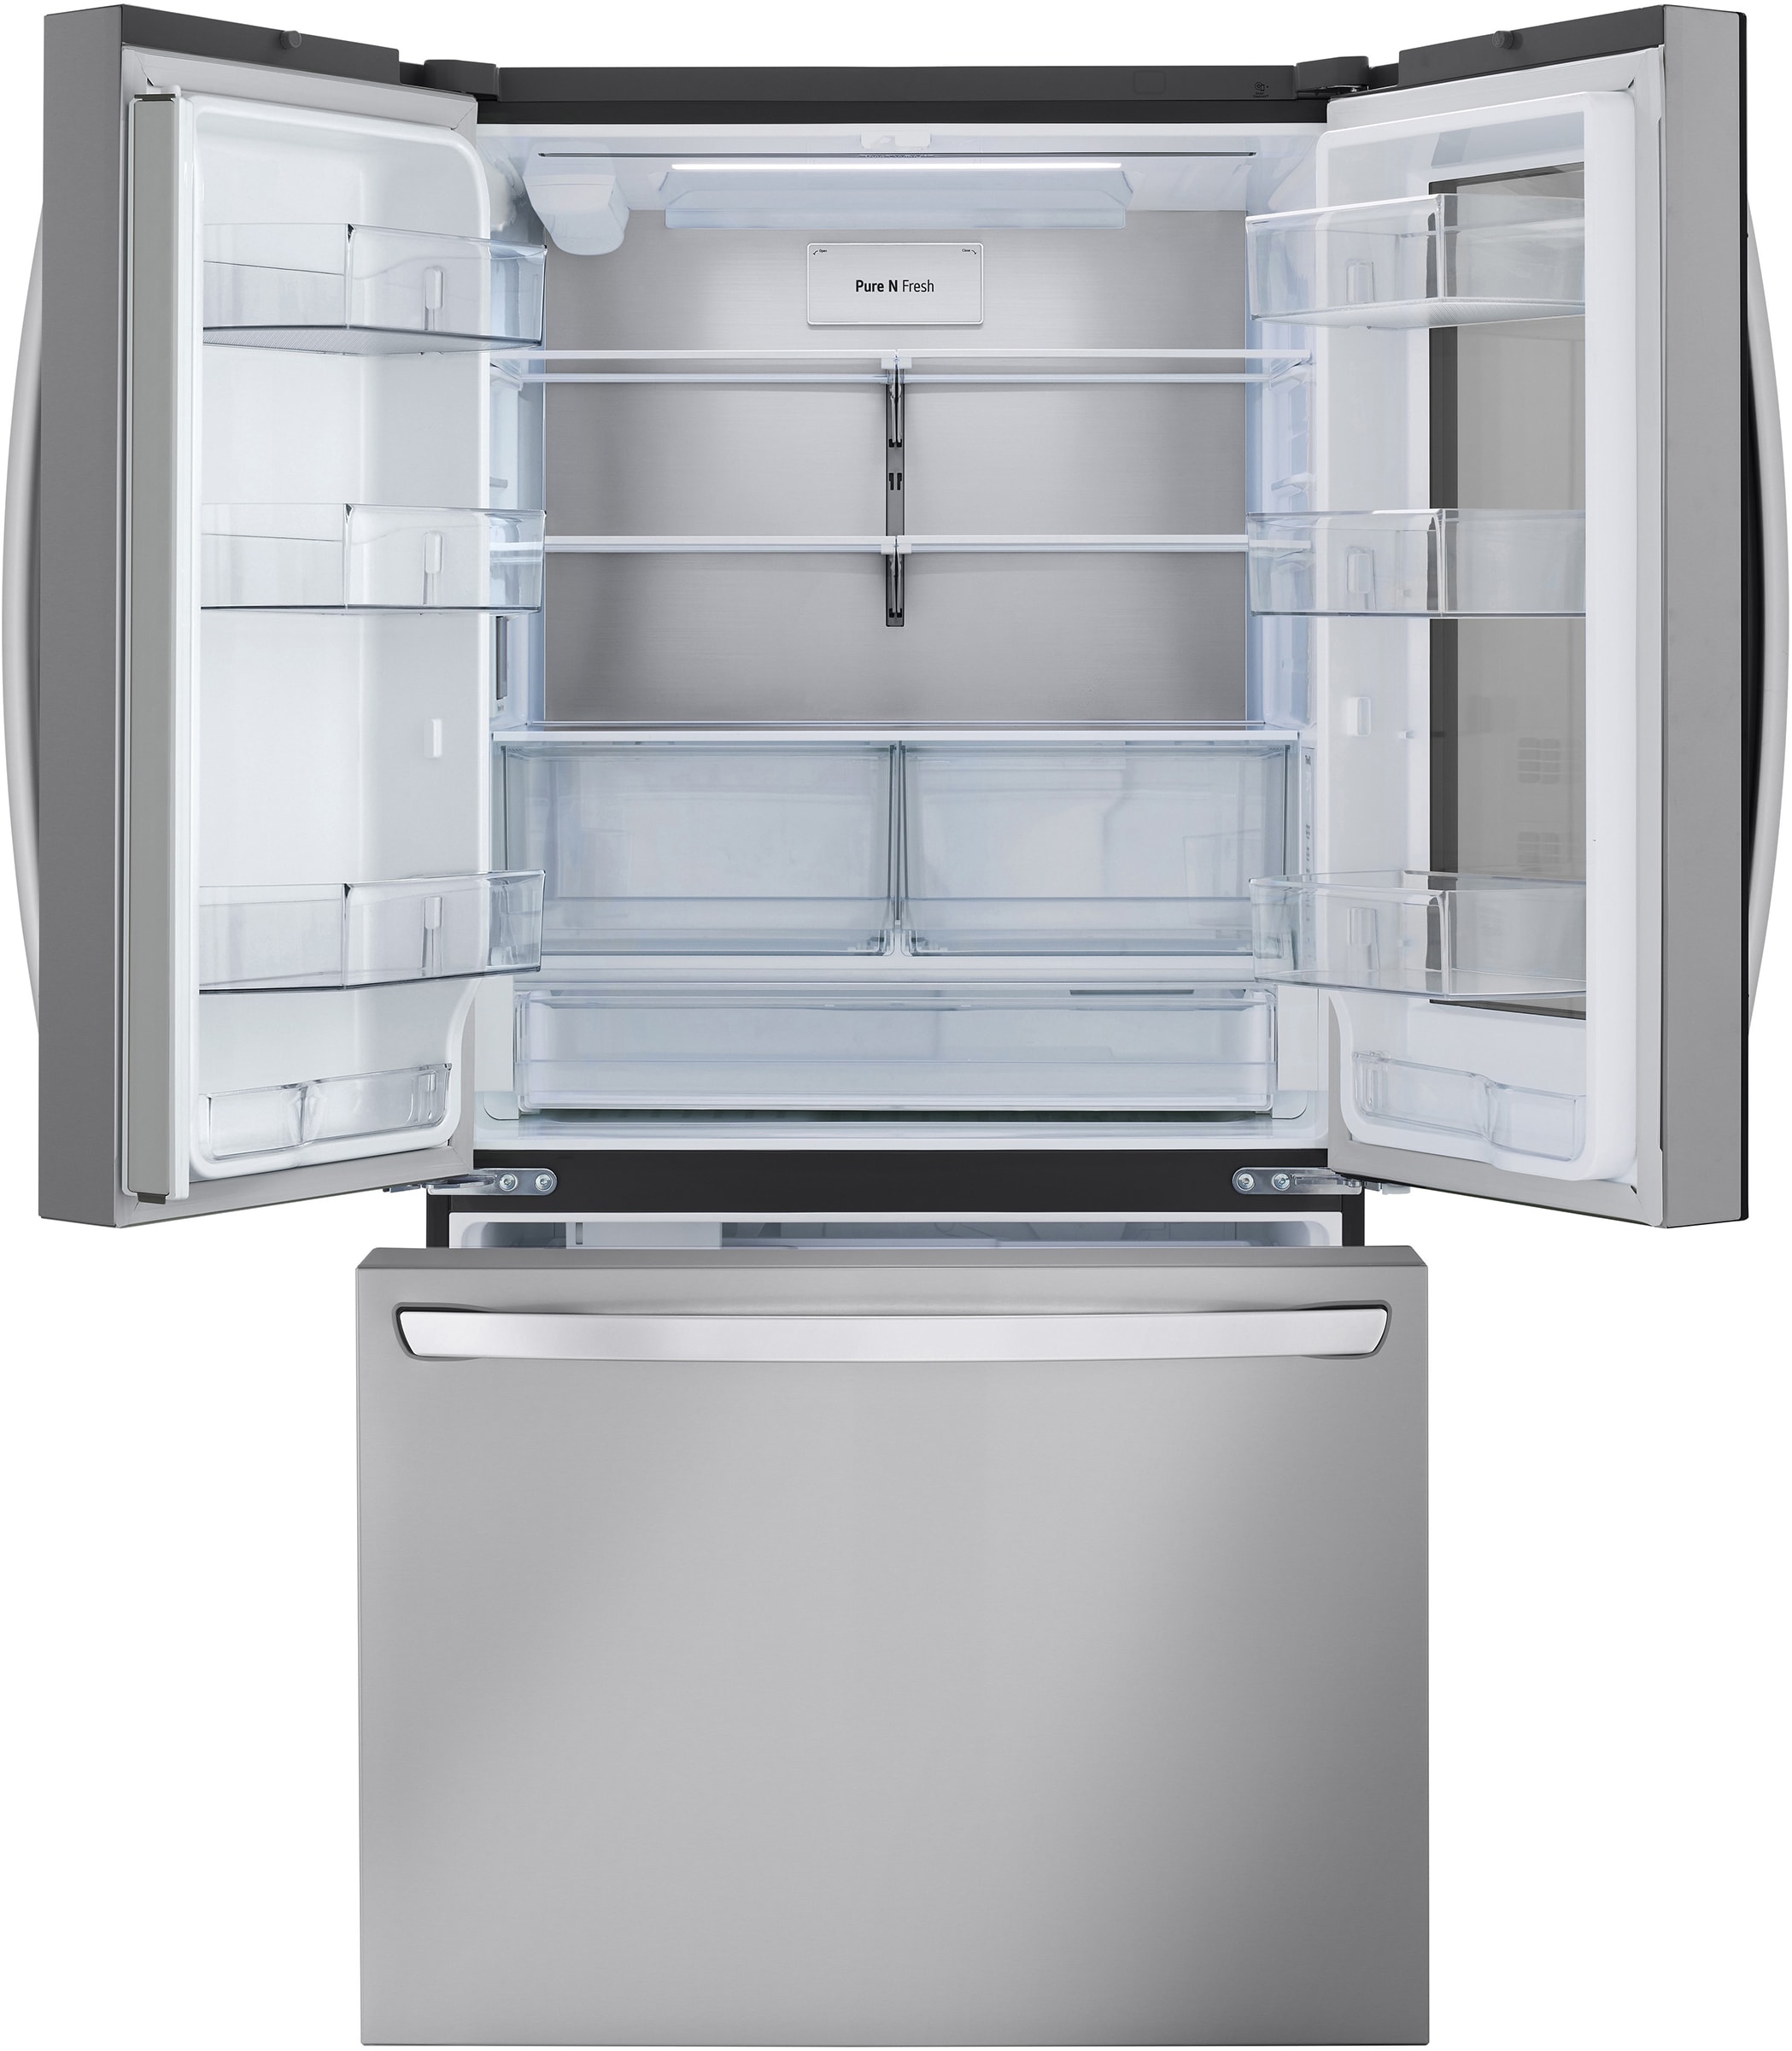 LG Réfrigérateur 3 portes  - GMW765STGJ